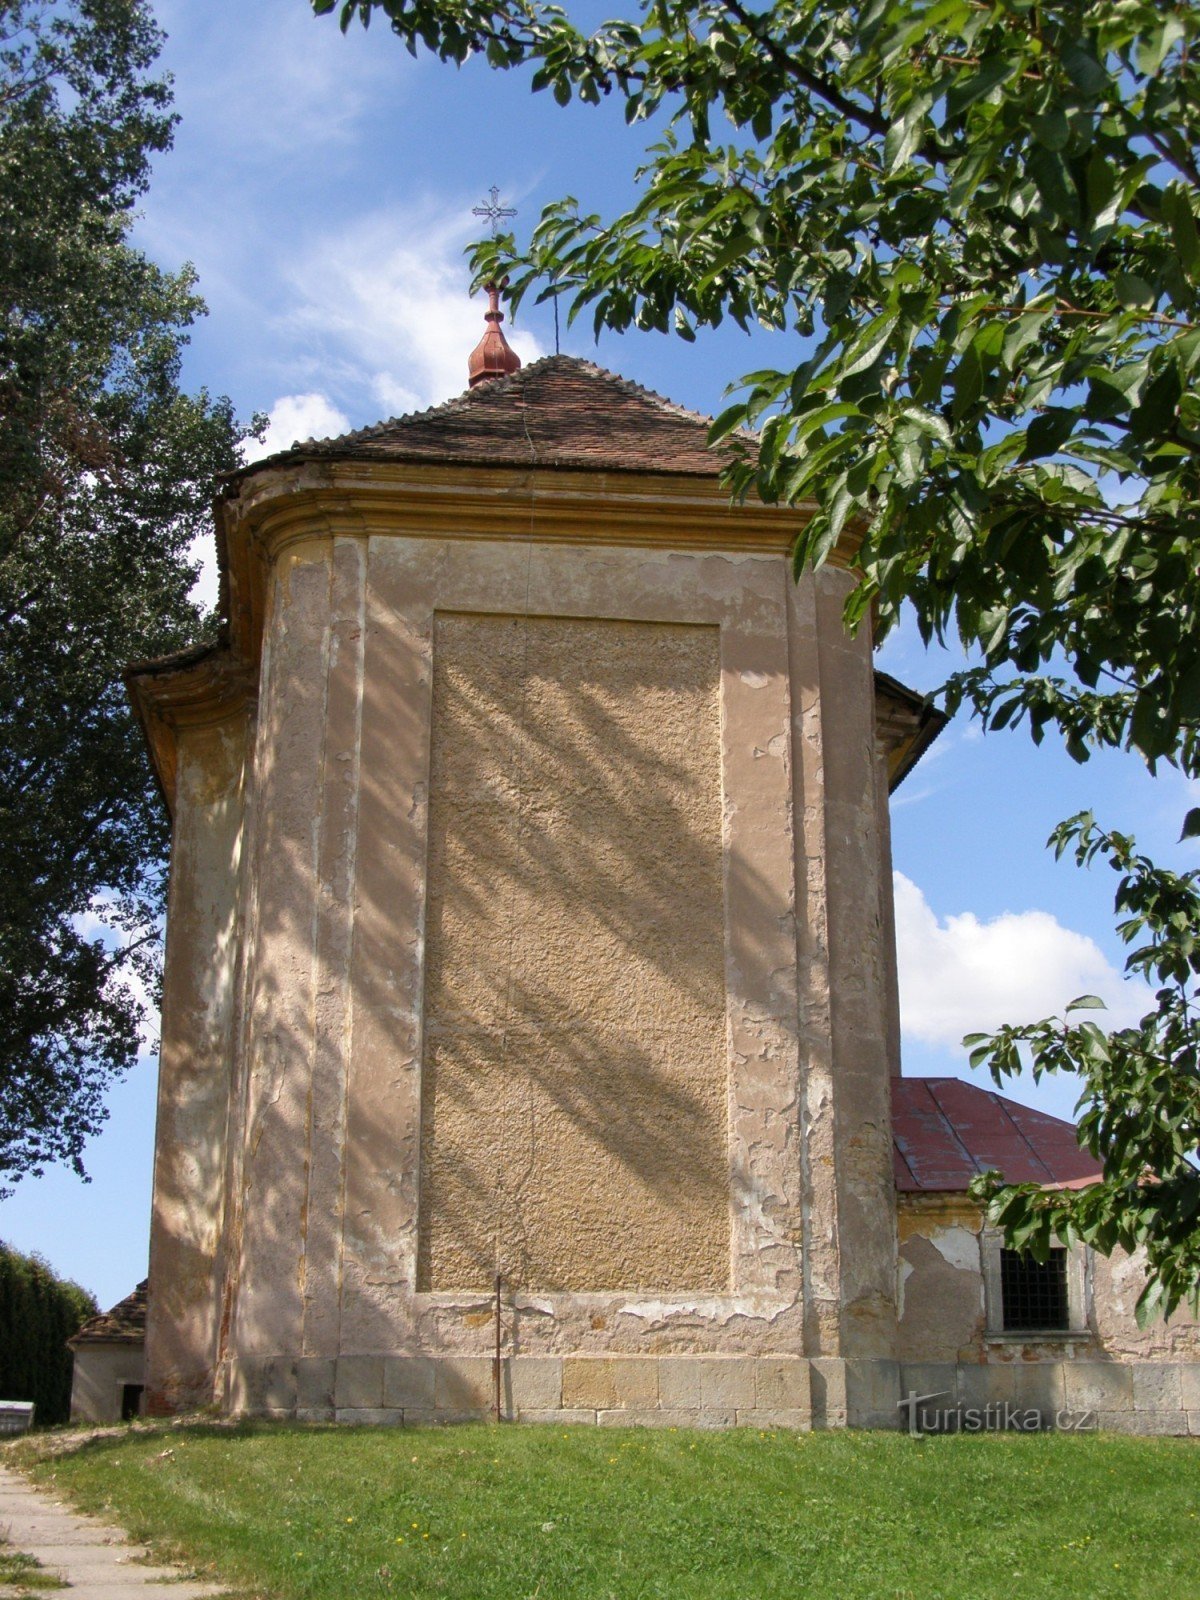 Žiželeves - biserica Sf. Nicolae